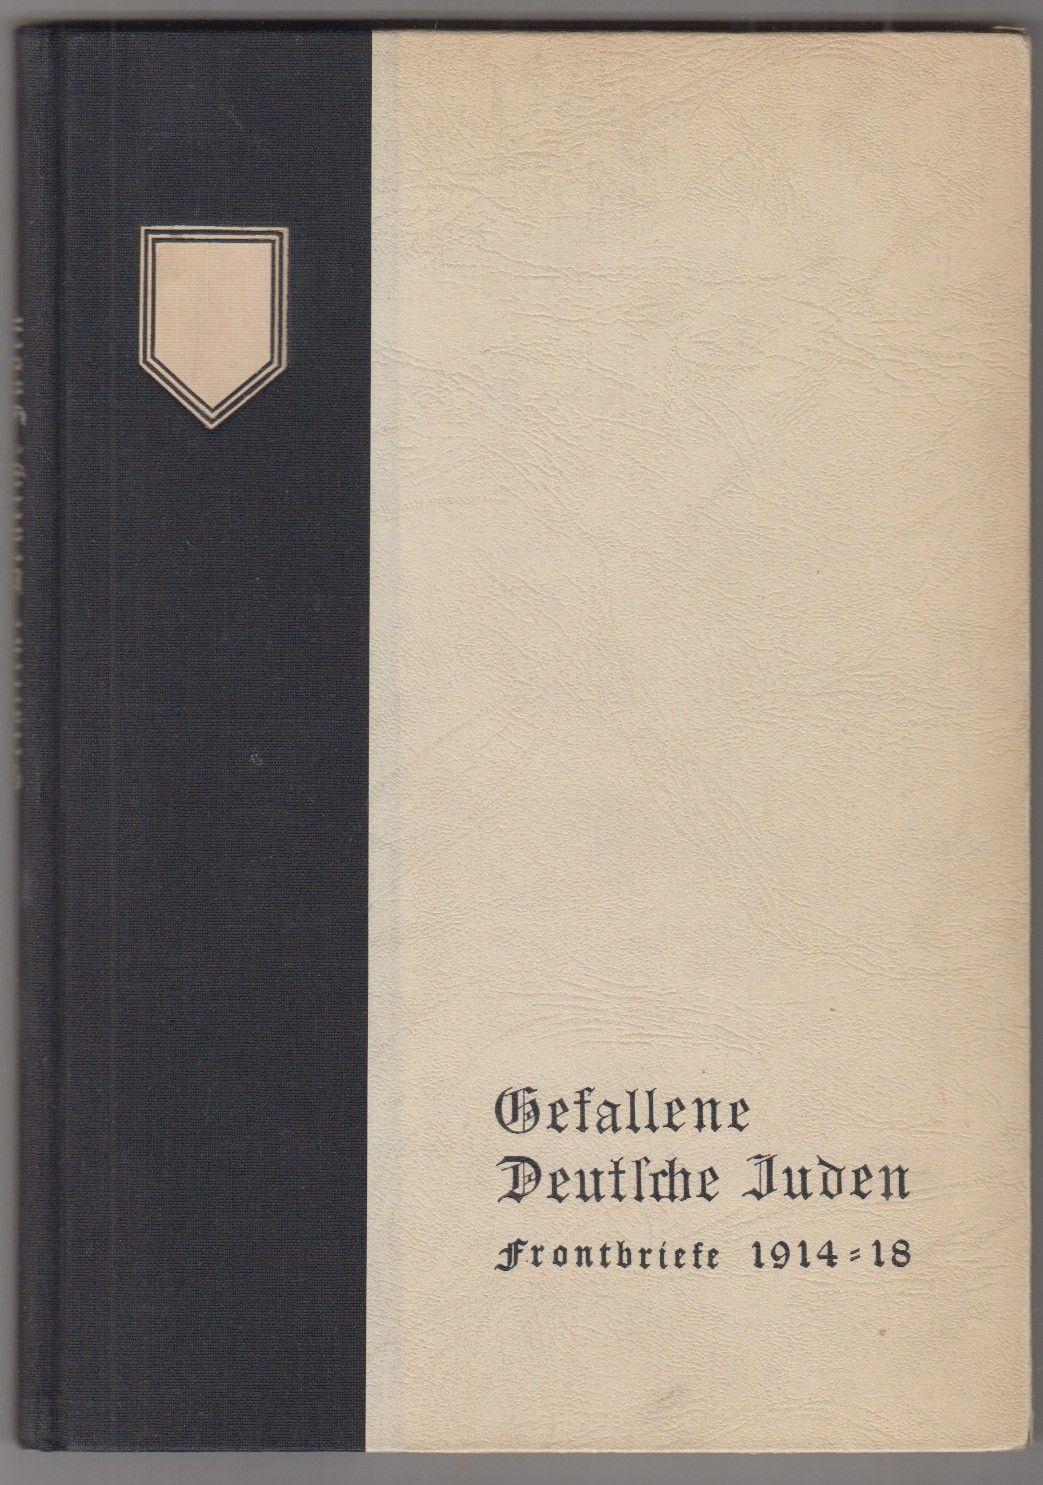  Gefallene Deutsche Juden. Frontbriefe 1914 - 18. Herausgegeben vom Reichsbund Jdischer Frontsoldaten.